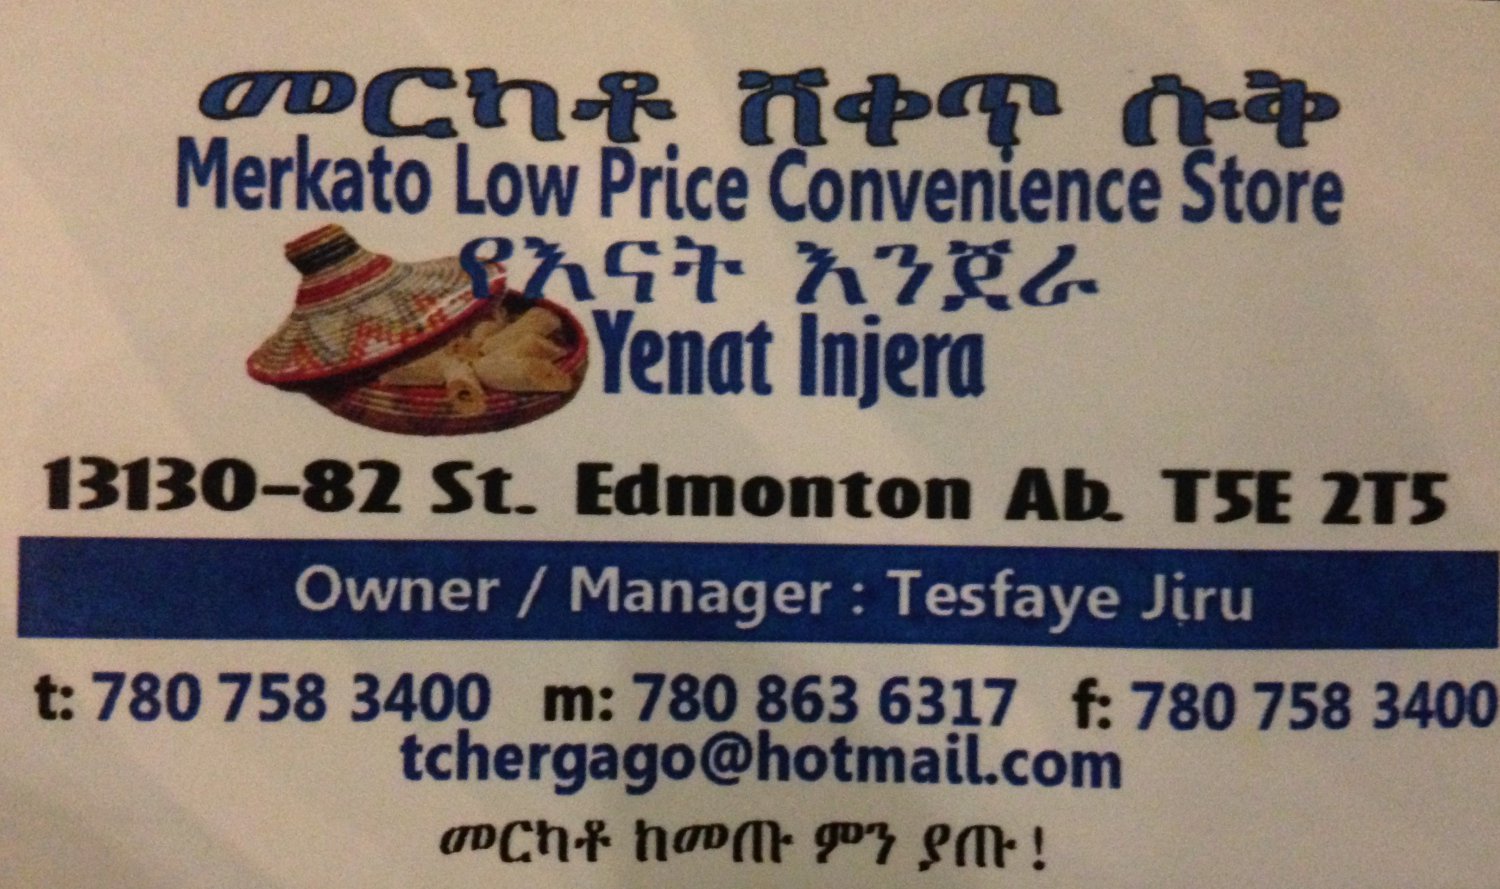 Merkato Low Price Convenient Store - Edmonton, Alberta Canada